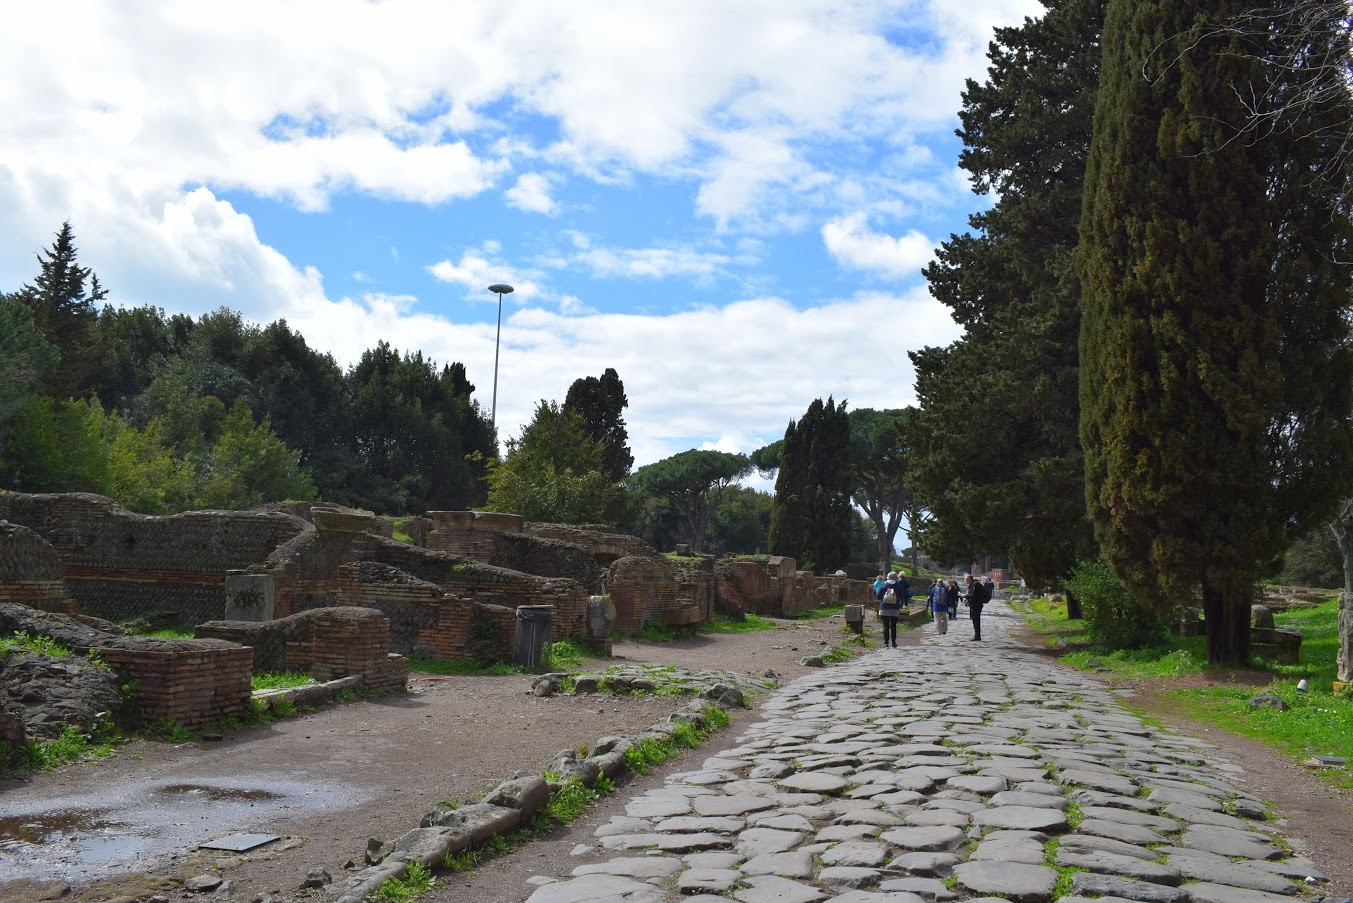 Rome’s ancient harbor city – Ostia Antica